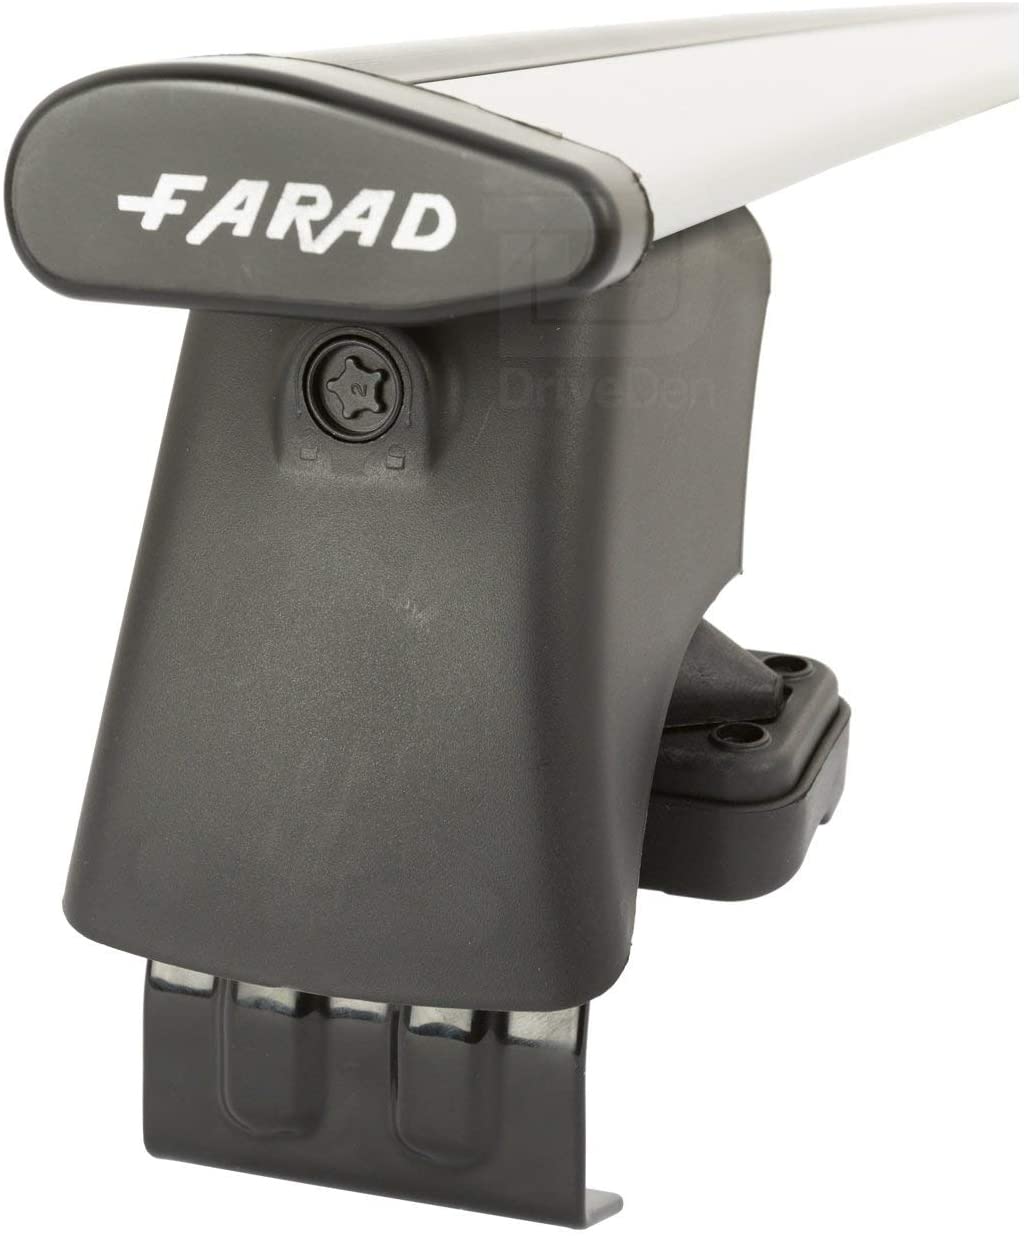 FARAD-Kit H2 per barre portatutto - Chevrolet Cruze Berlina 2009-2015 (senza corrimano)